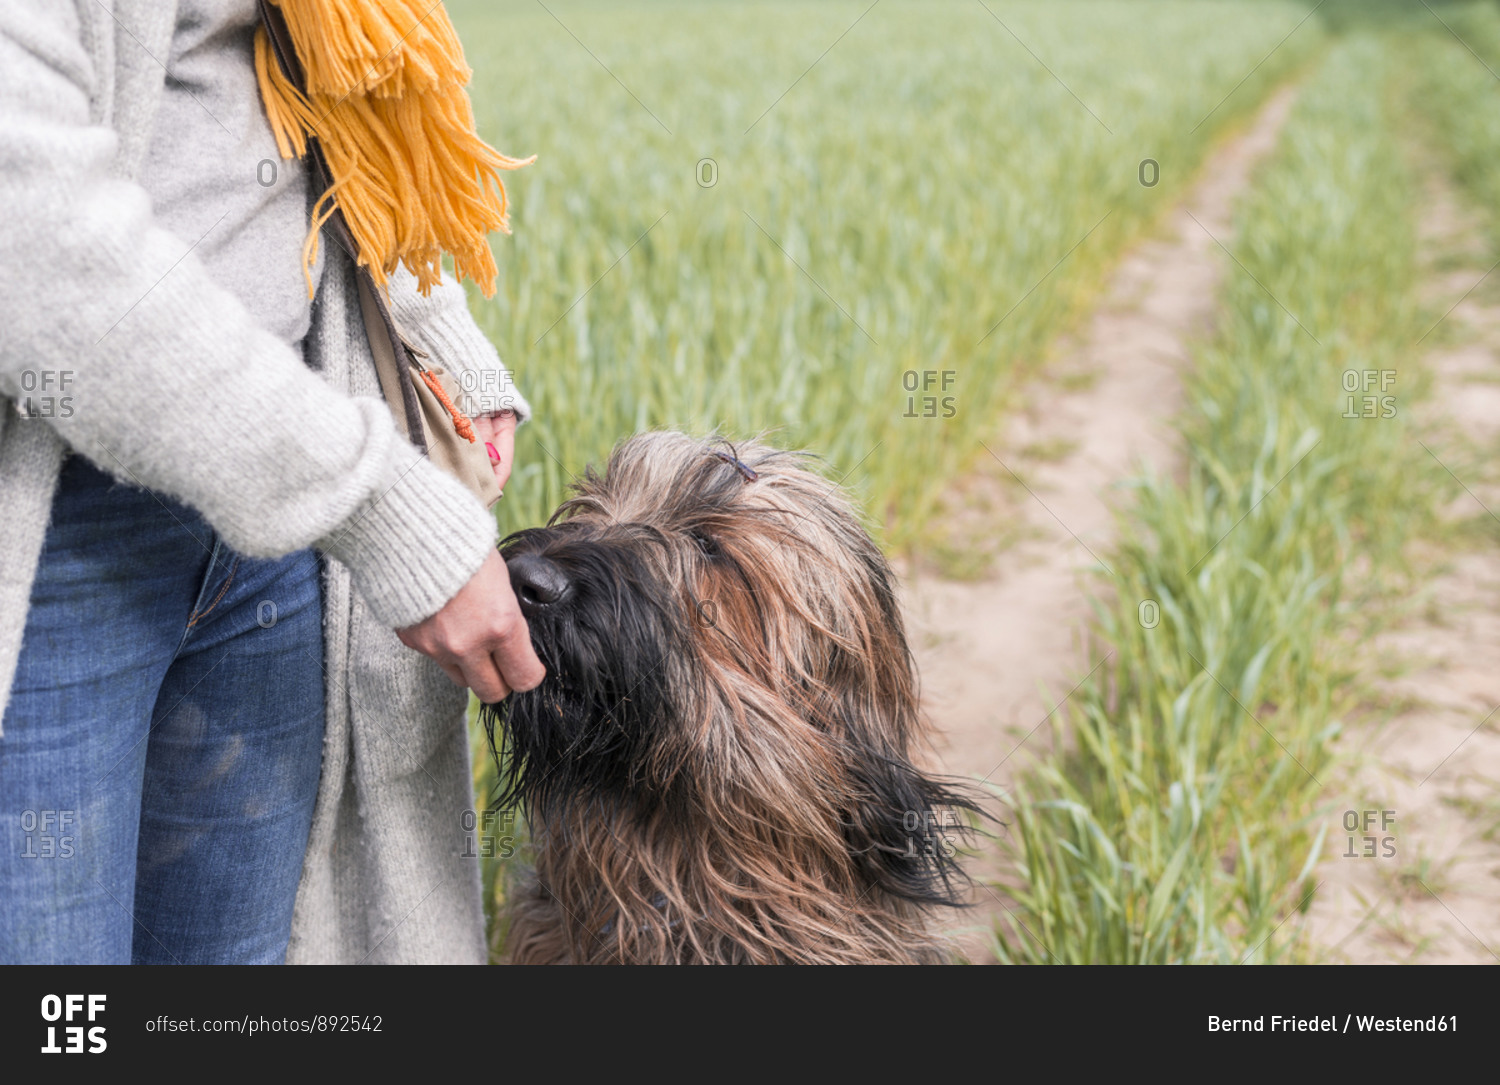 Woman feeding dog at a field